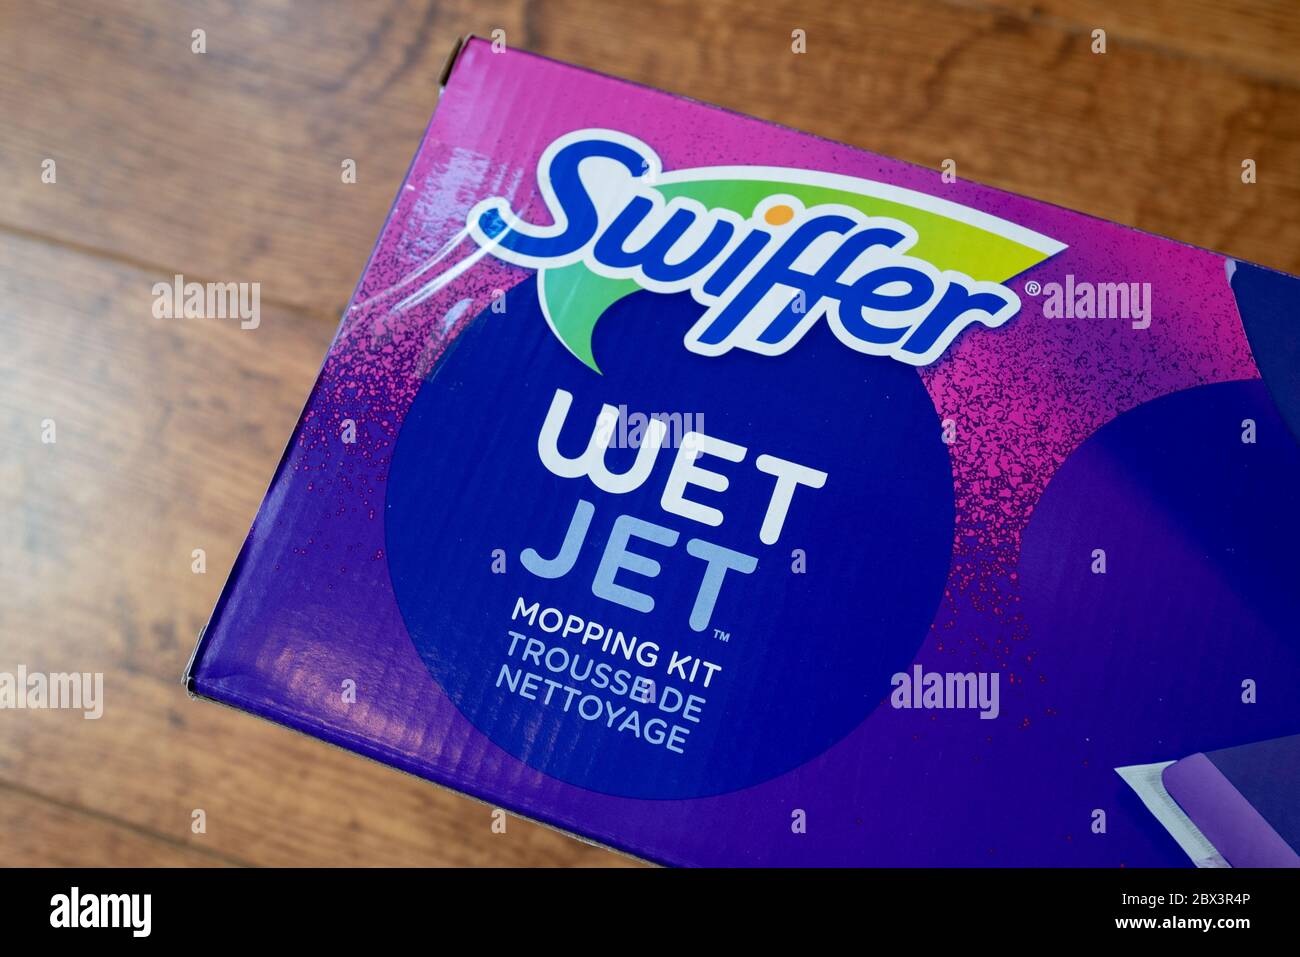 Swiffer wet jet immagini e fotografie stock ad alta risoluzione - Alamy